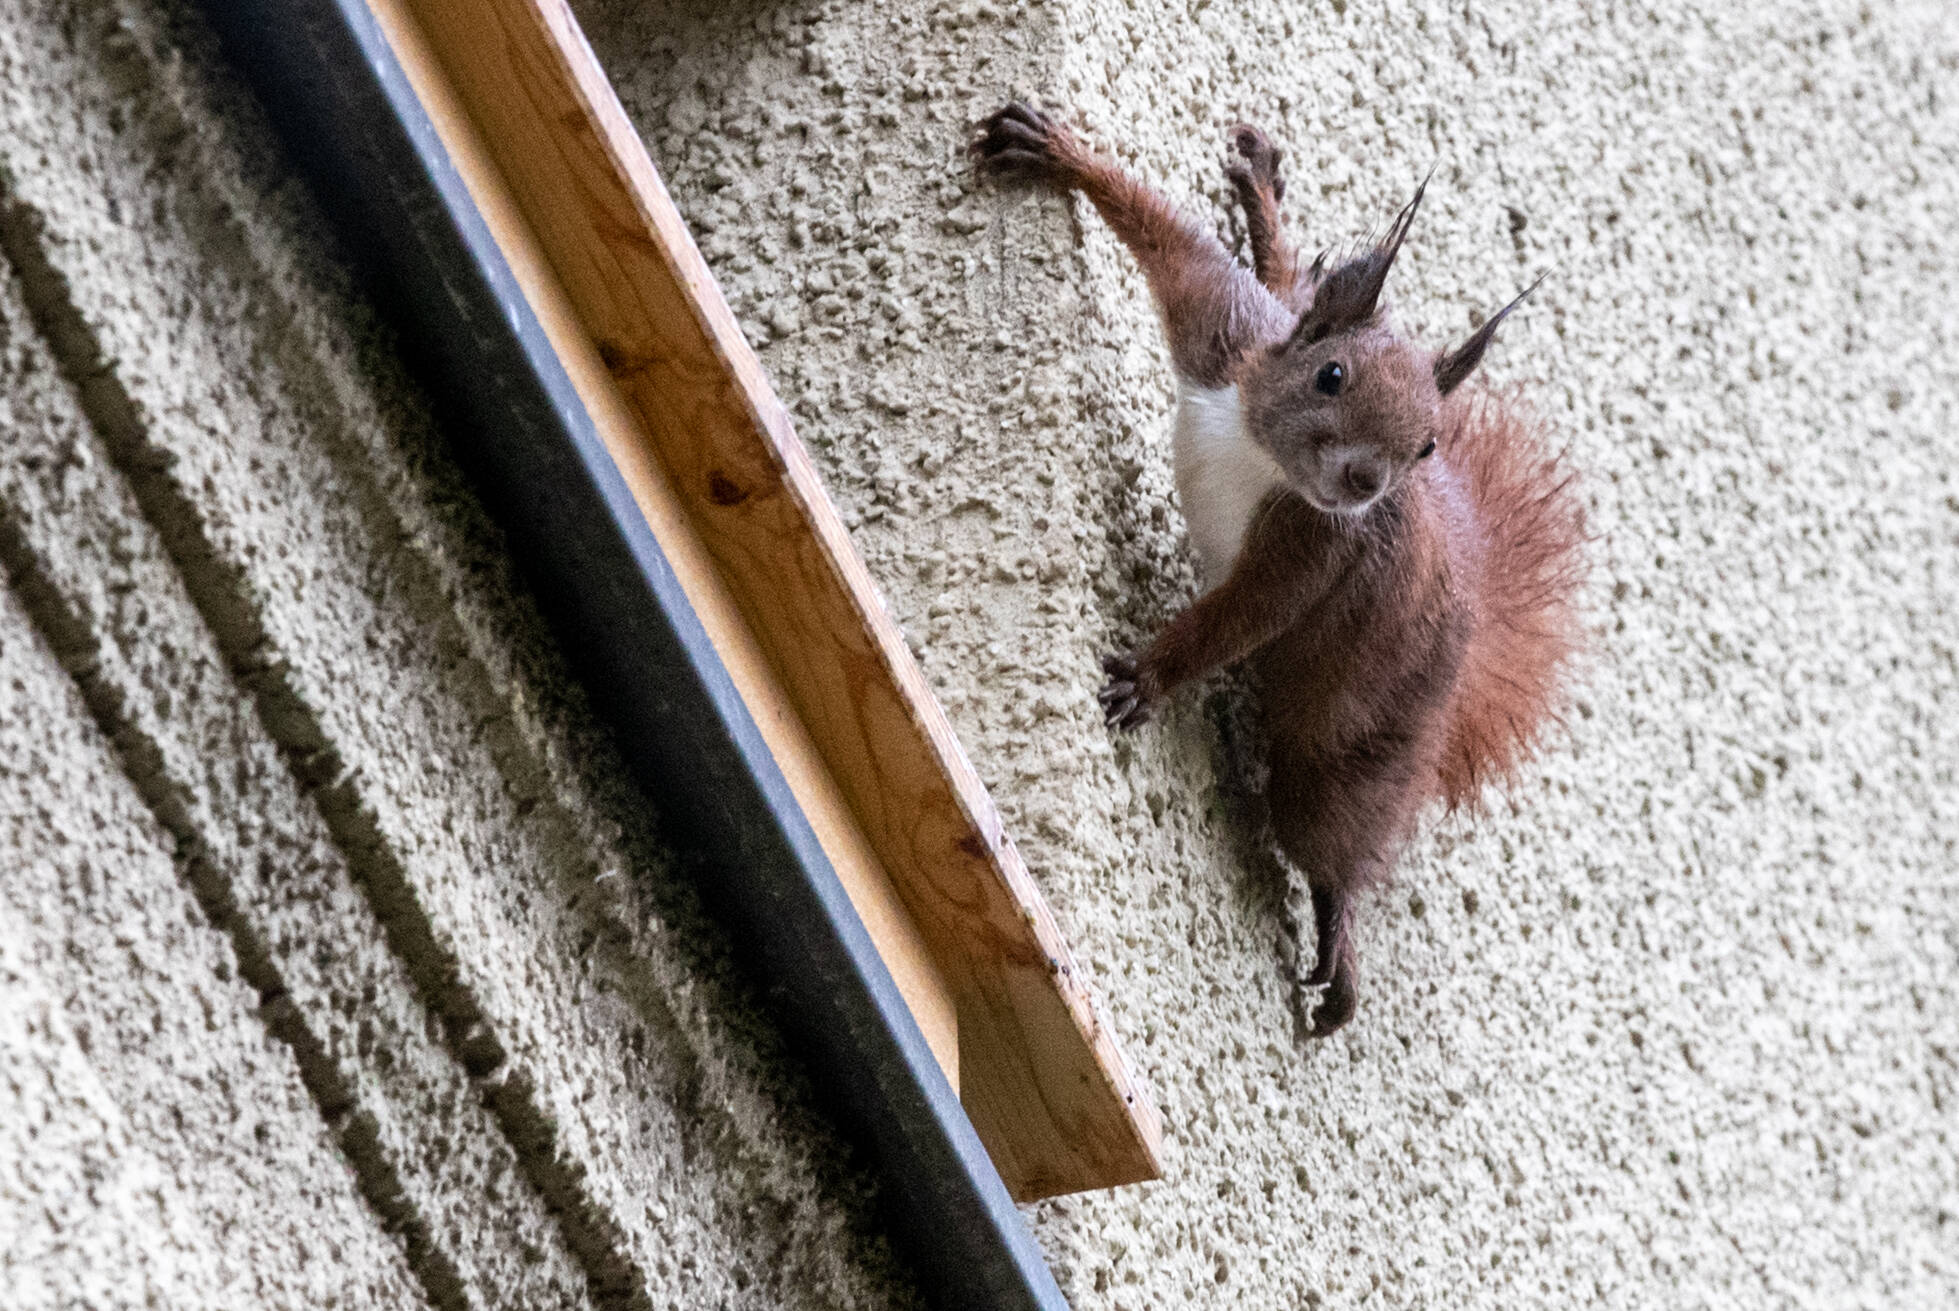 Eichhörnchen klettert Hauswand empor. Foto: Imago/Andreas Gora